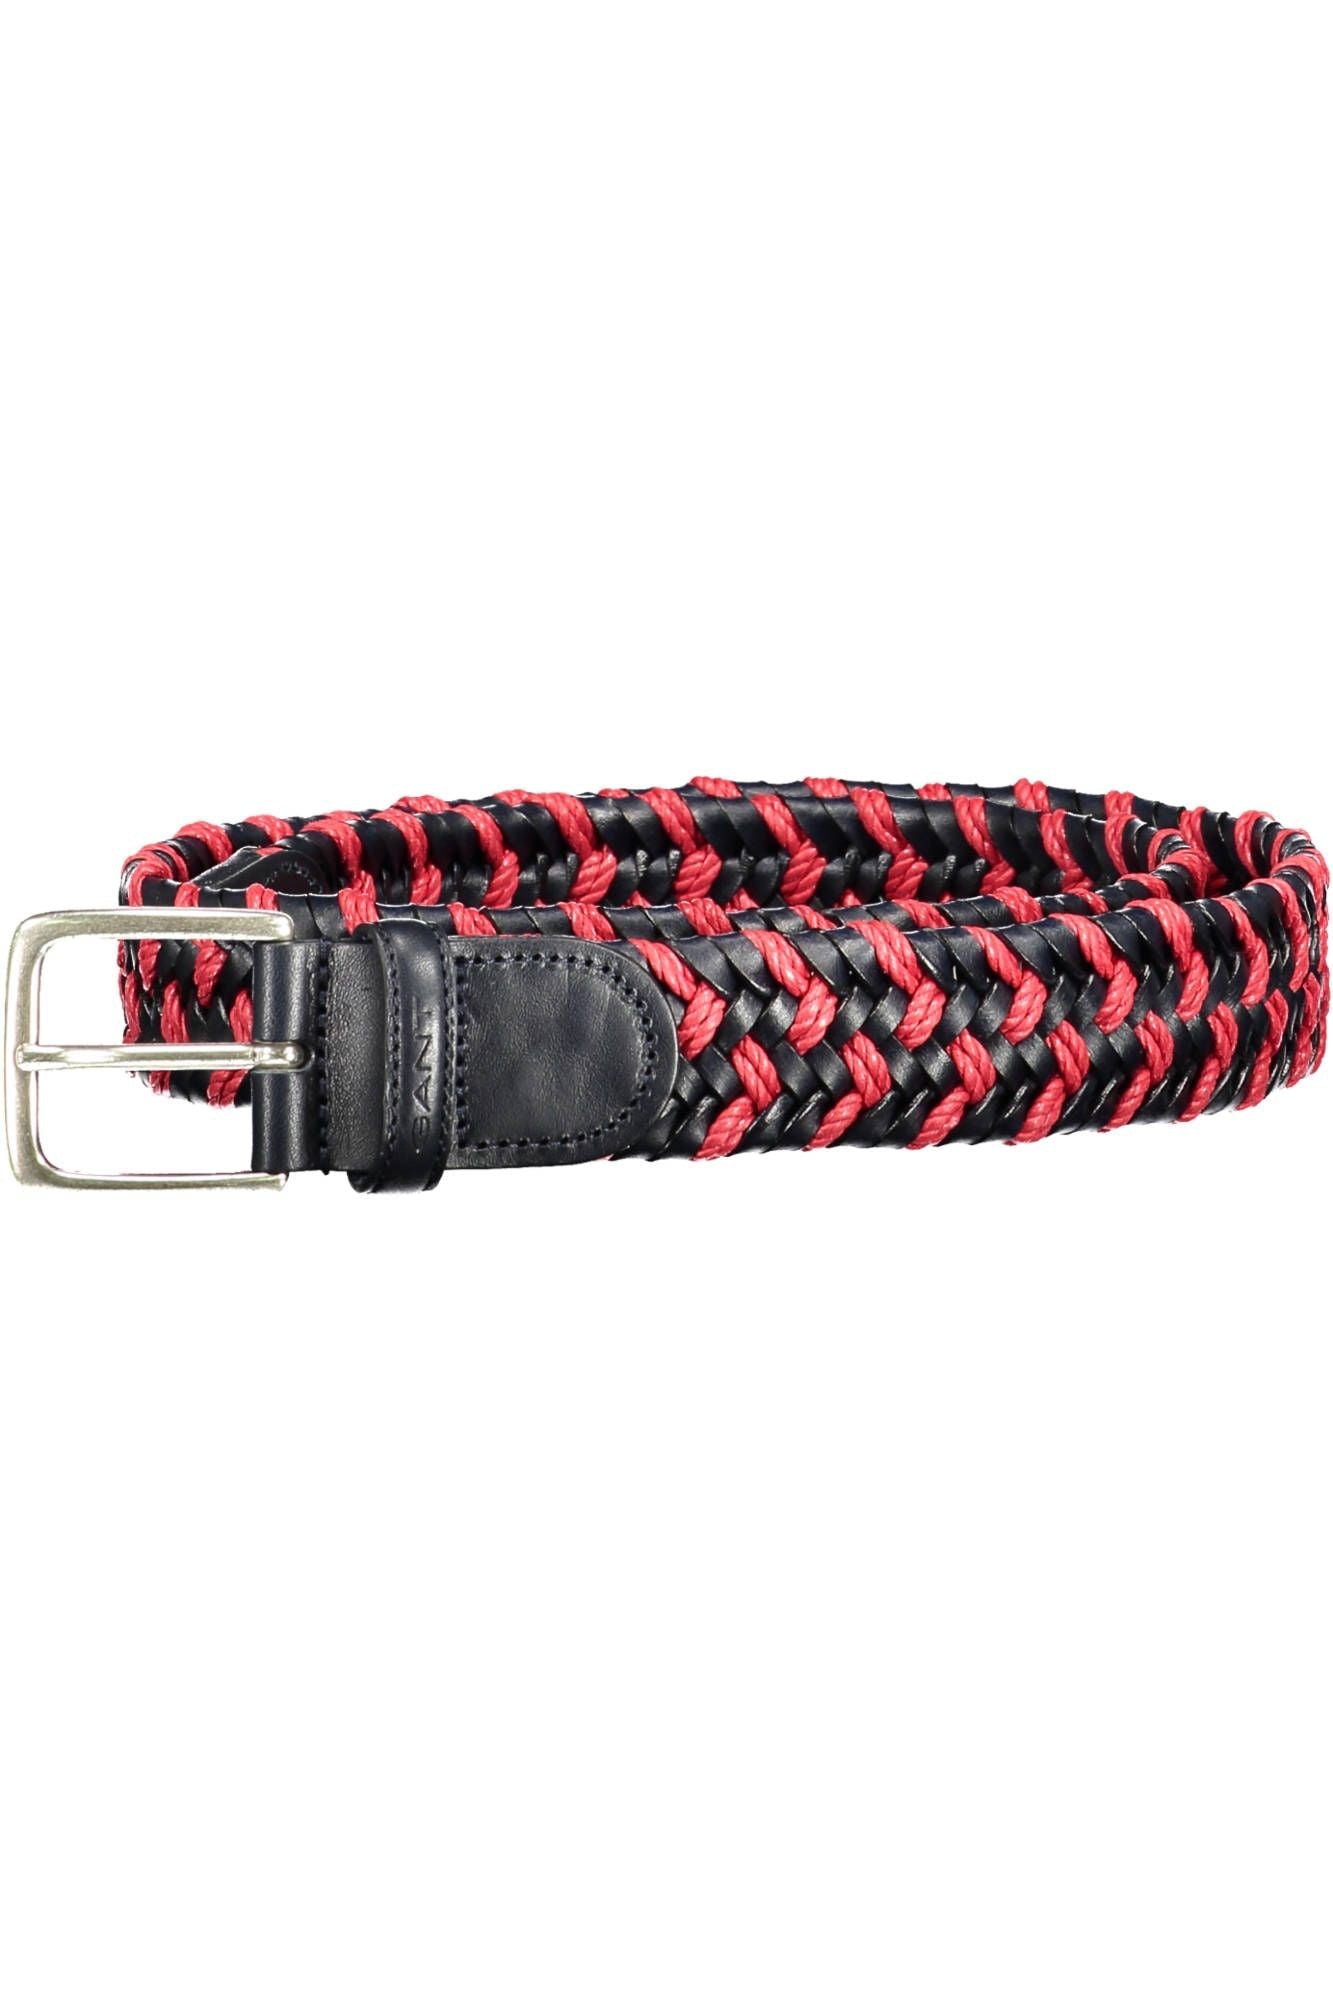 Gant Elegant Pink Leather Belt with Metal Buckle | Fashionsarah.com